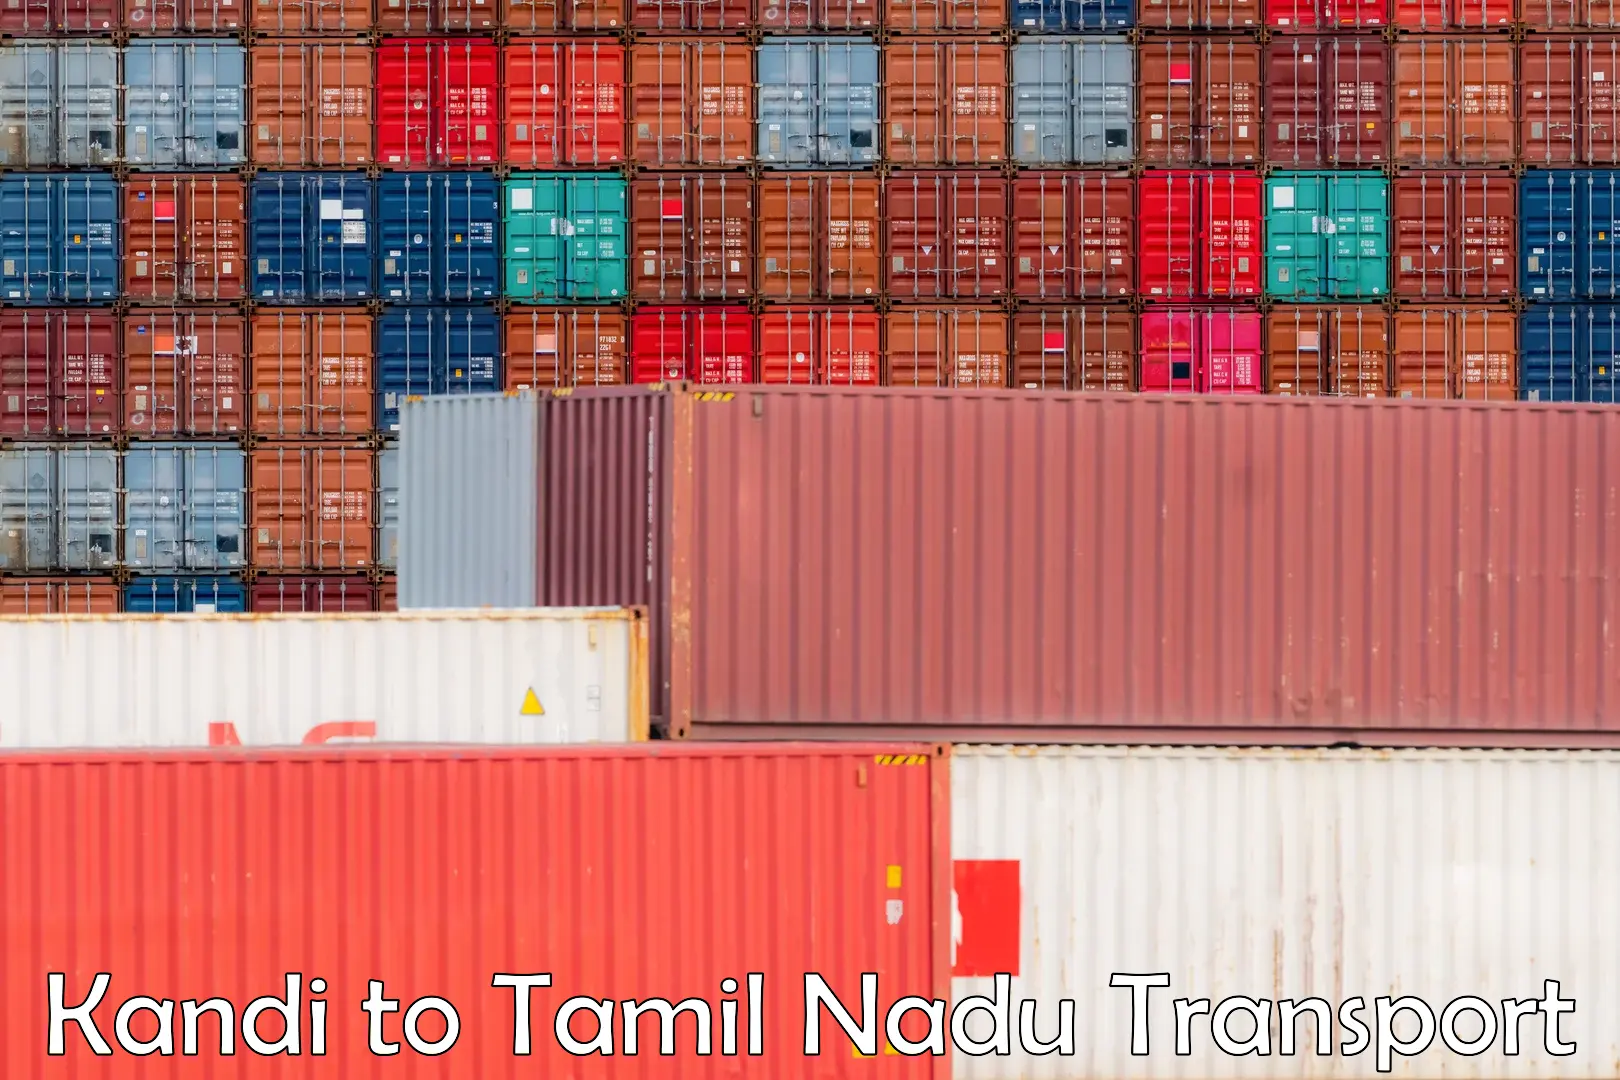 Truck transport companies in India Kandi to Tamil Nadu